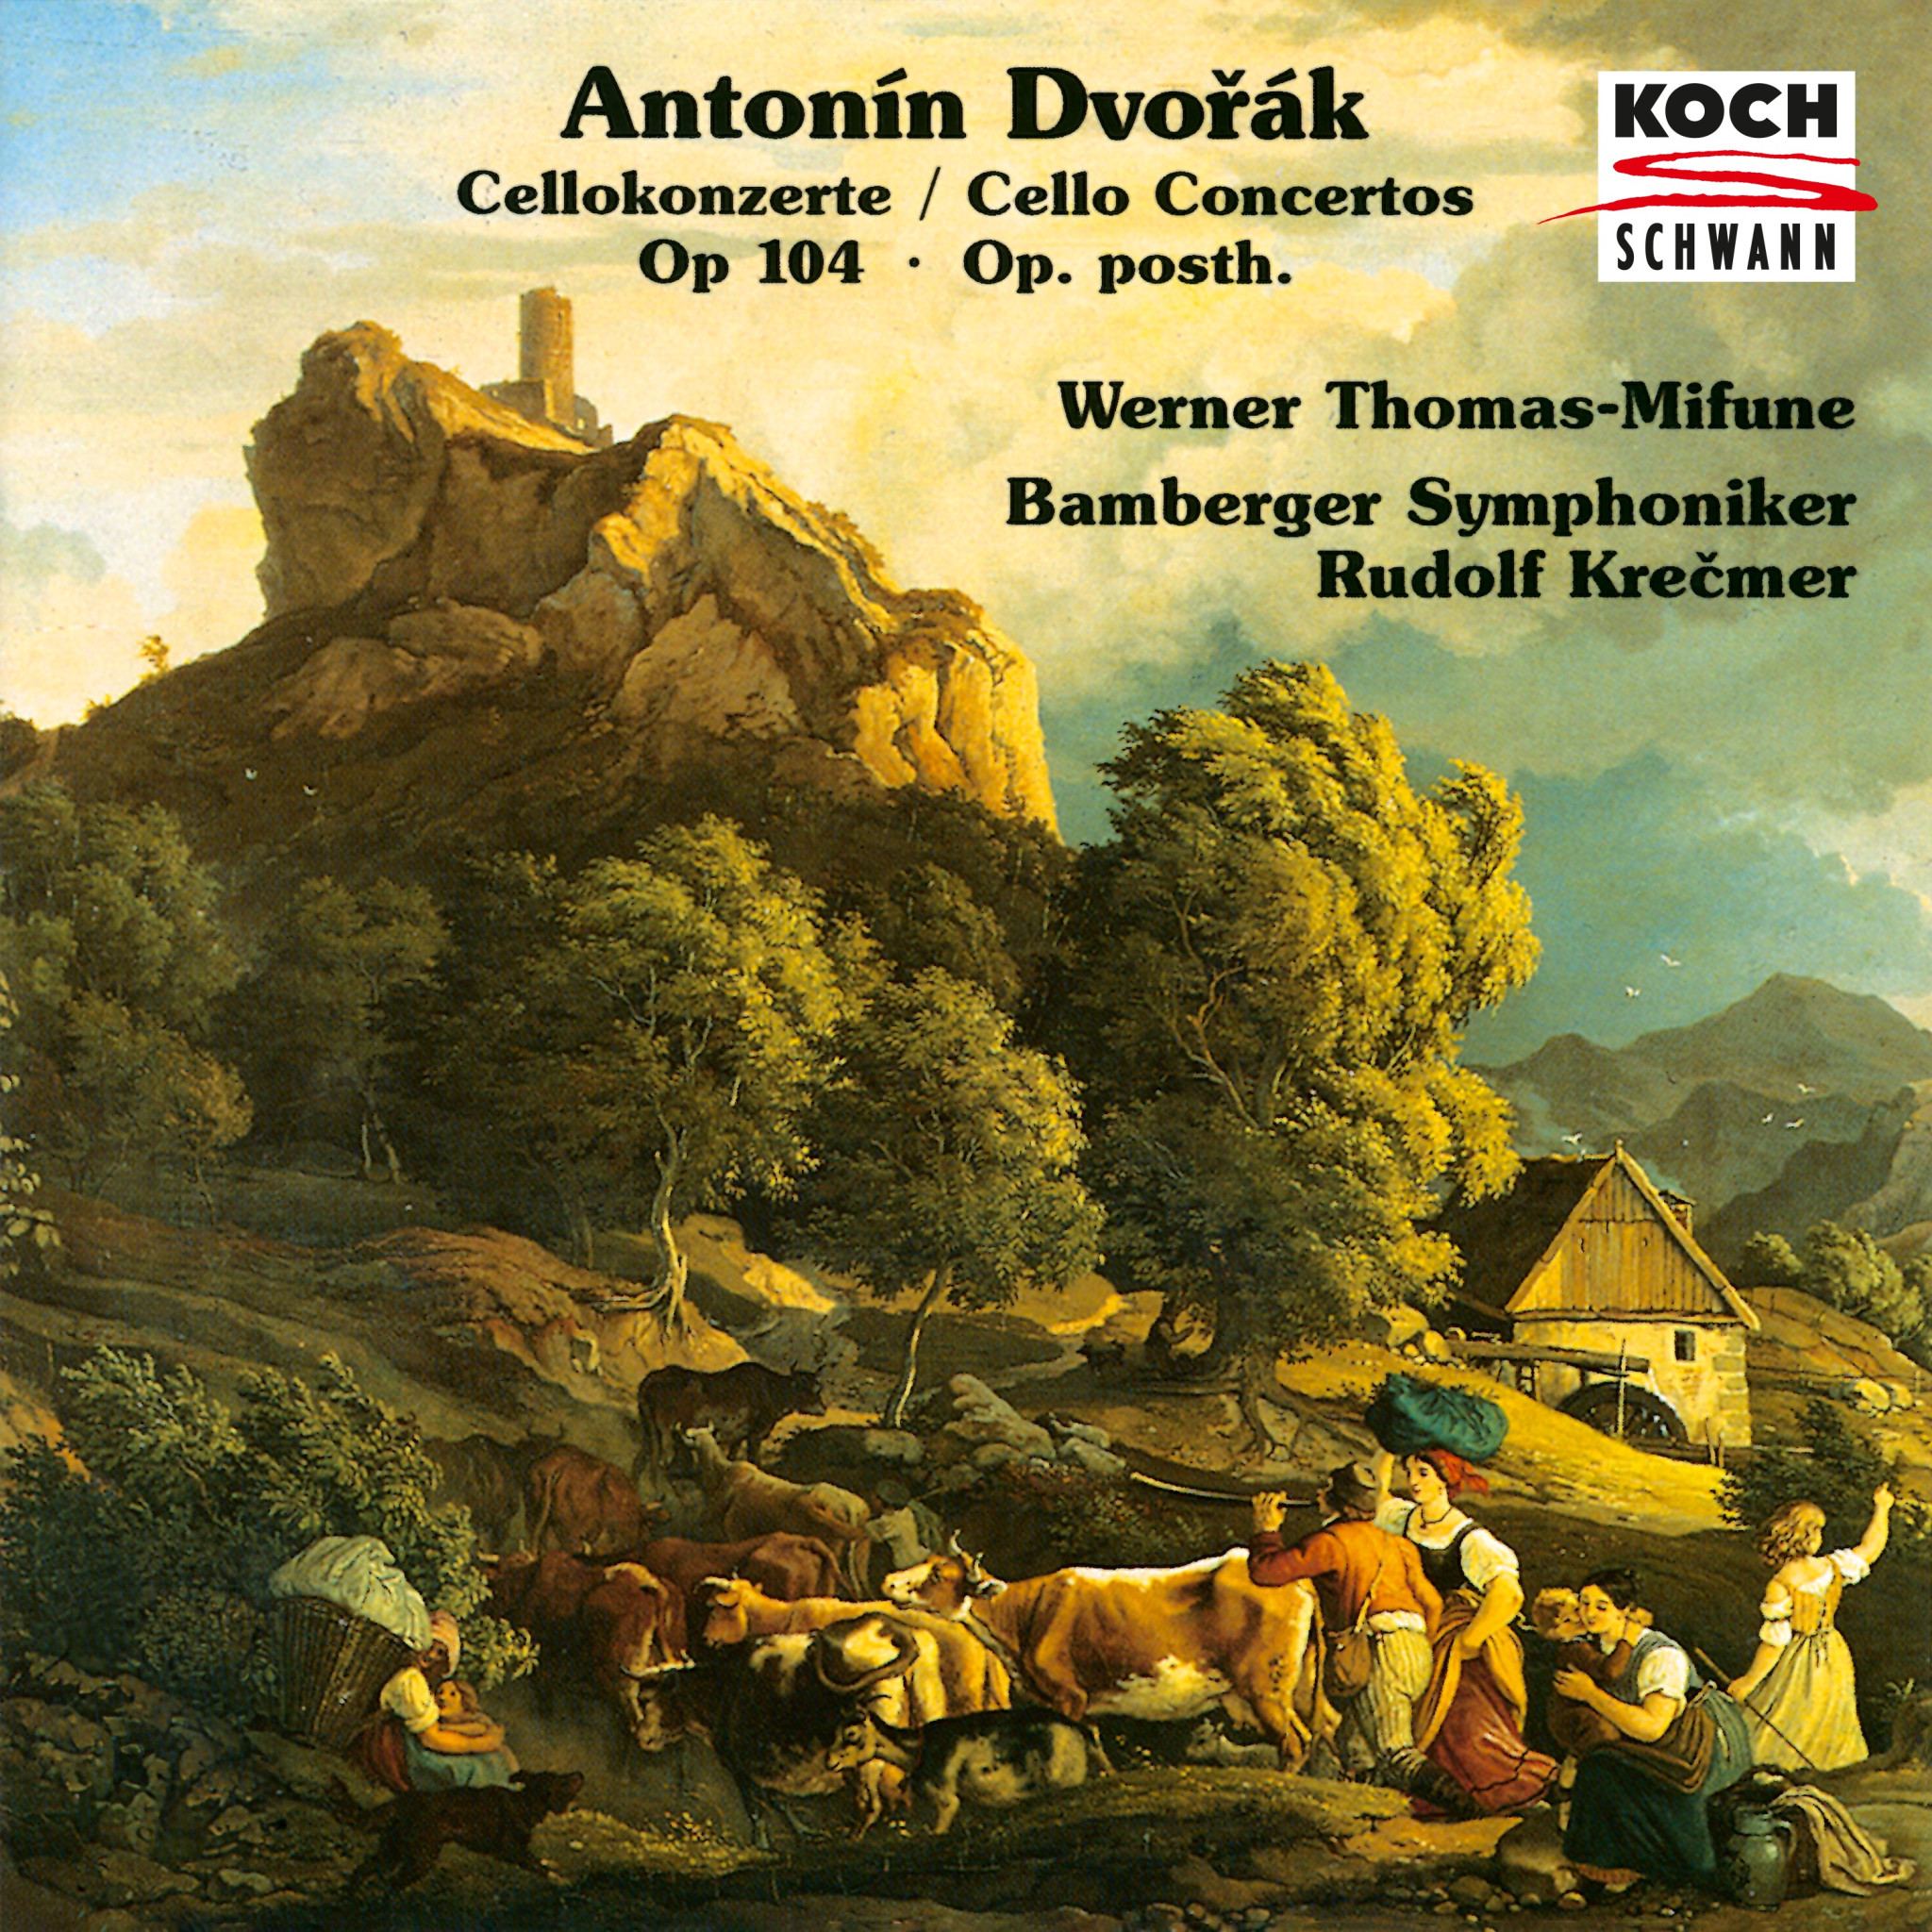 Dvořák: Cello Concerto in B Minor, B. 191; Cello Concerto in A Major, B. 10